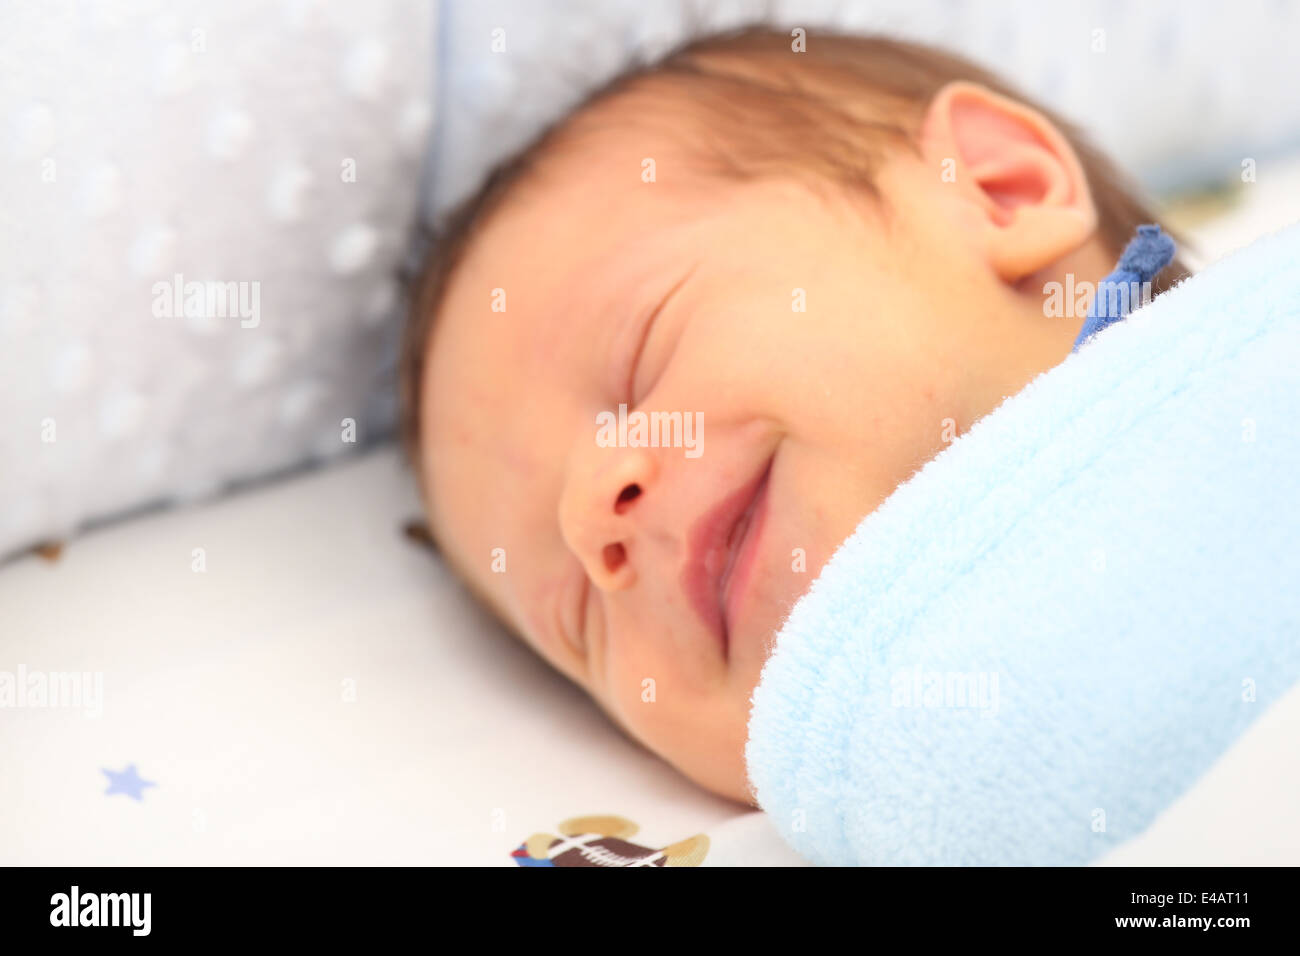 Una coperta che copre un neonato sorridente. Focus sulla coperta. Foto Stock